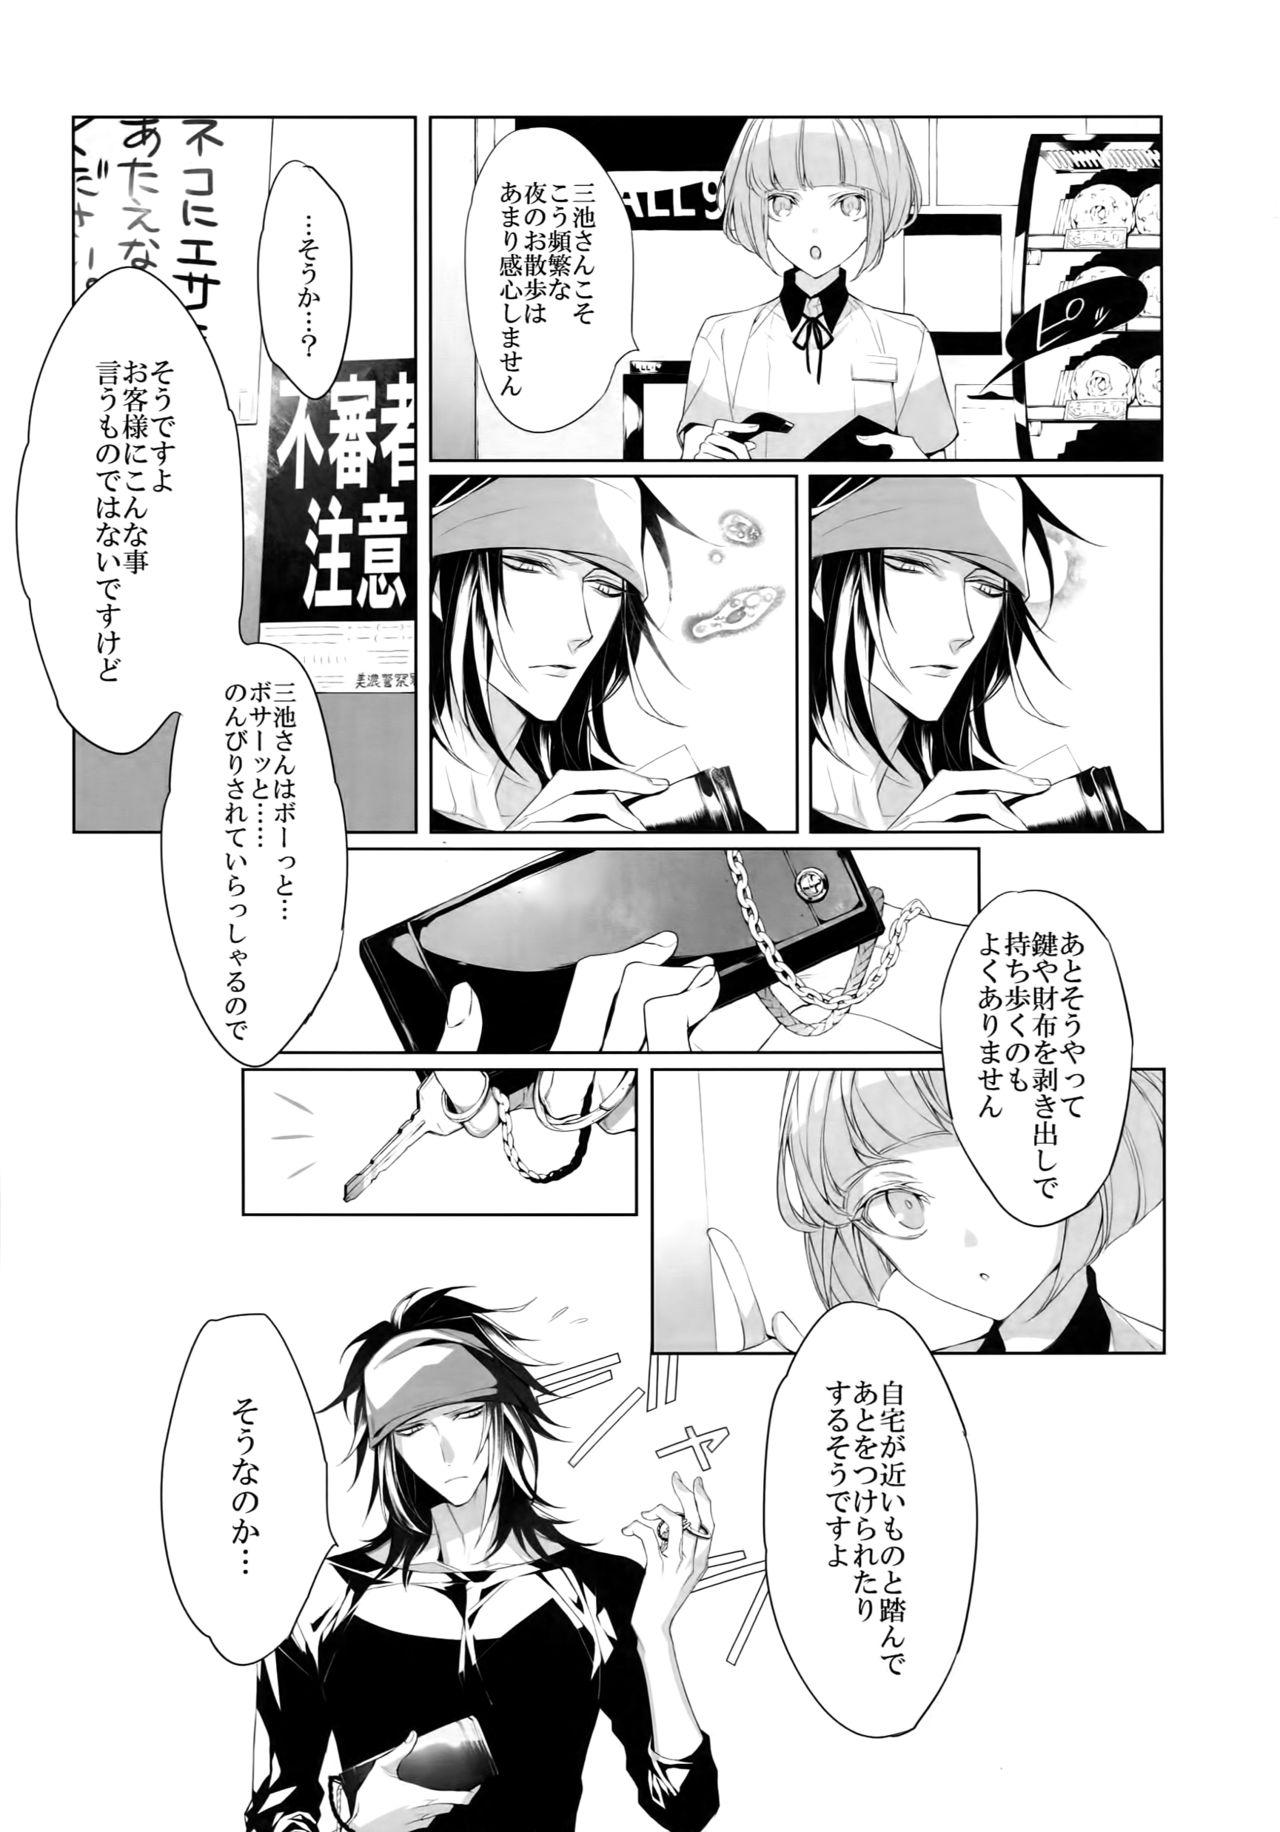 Clothed Mitsu kon! - Touken ranbu Spread - Page 6